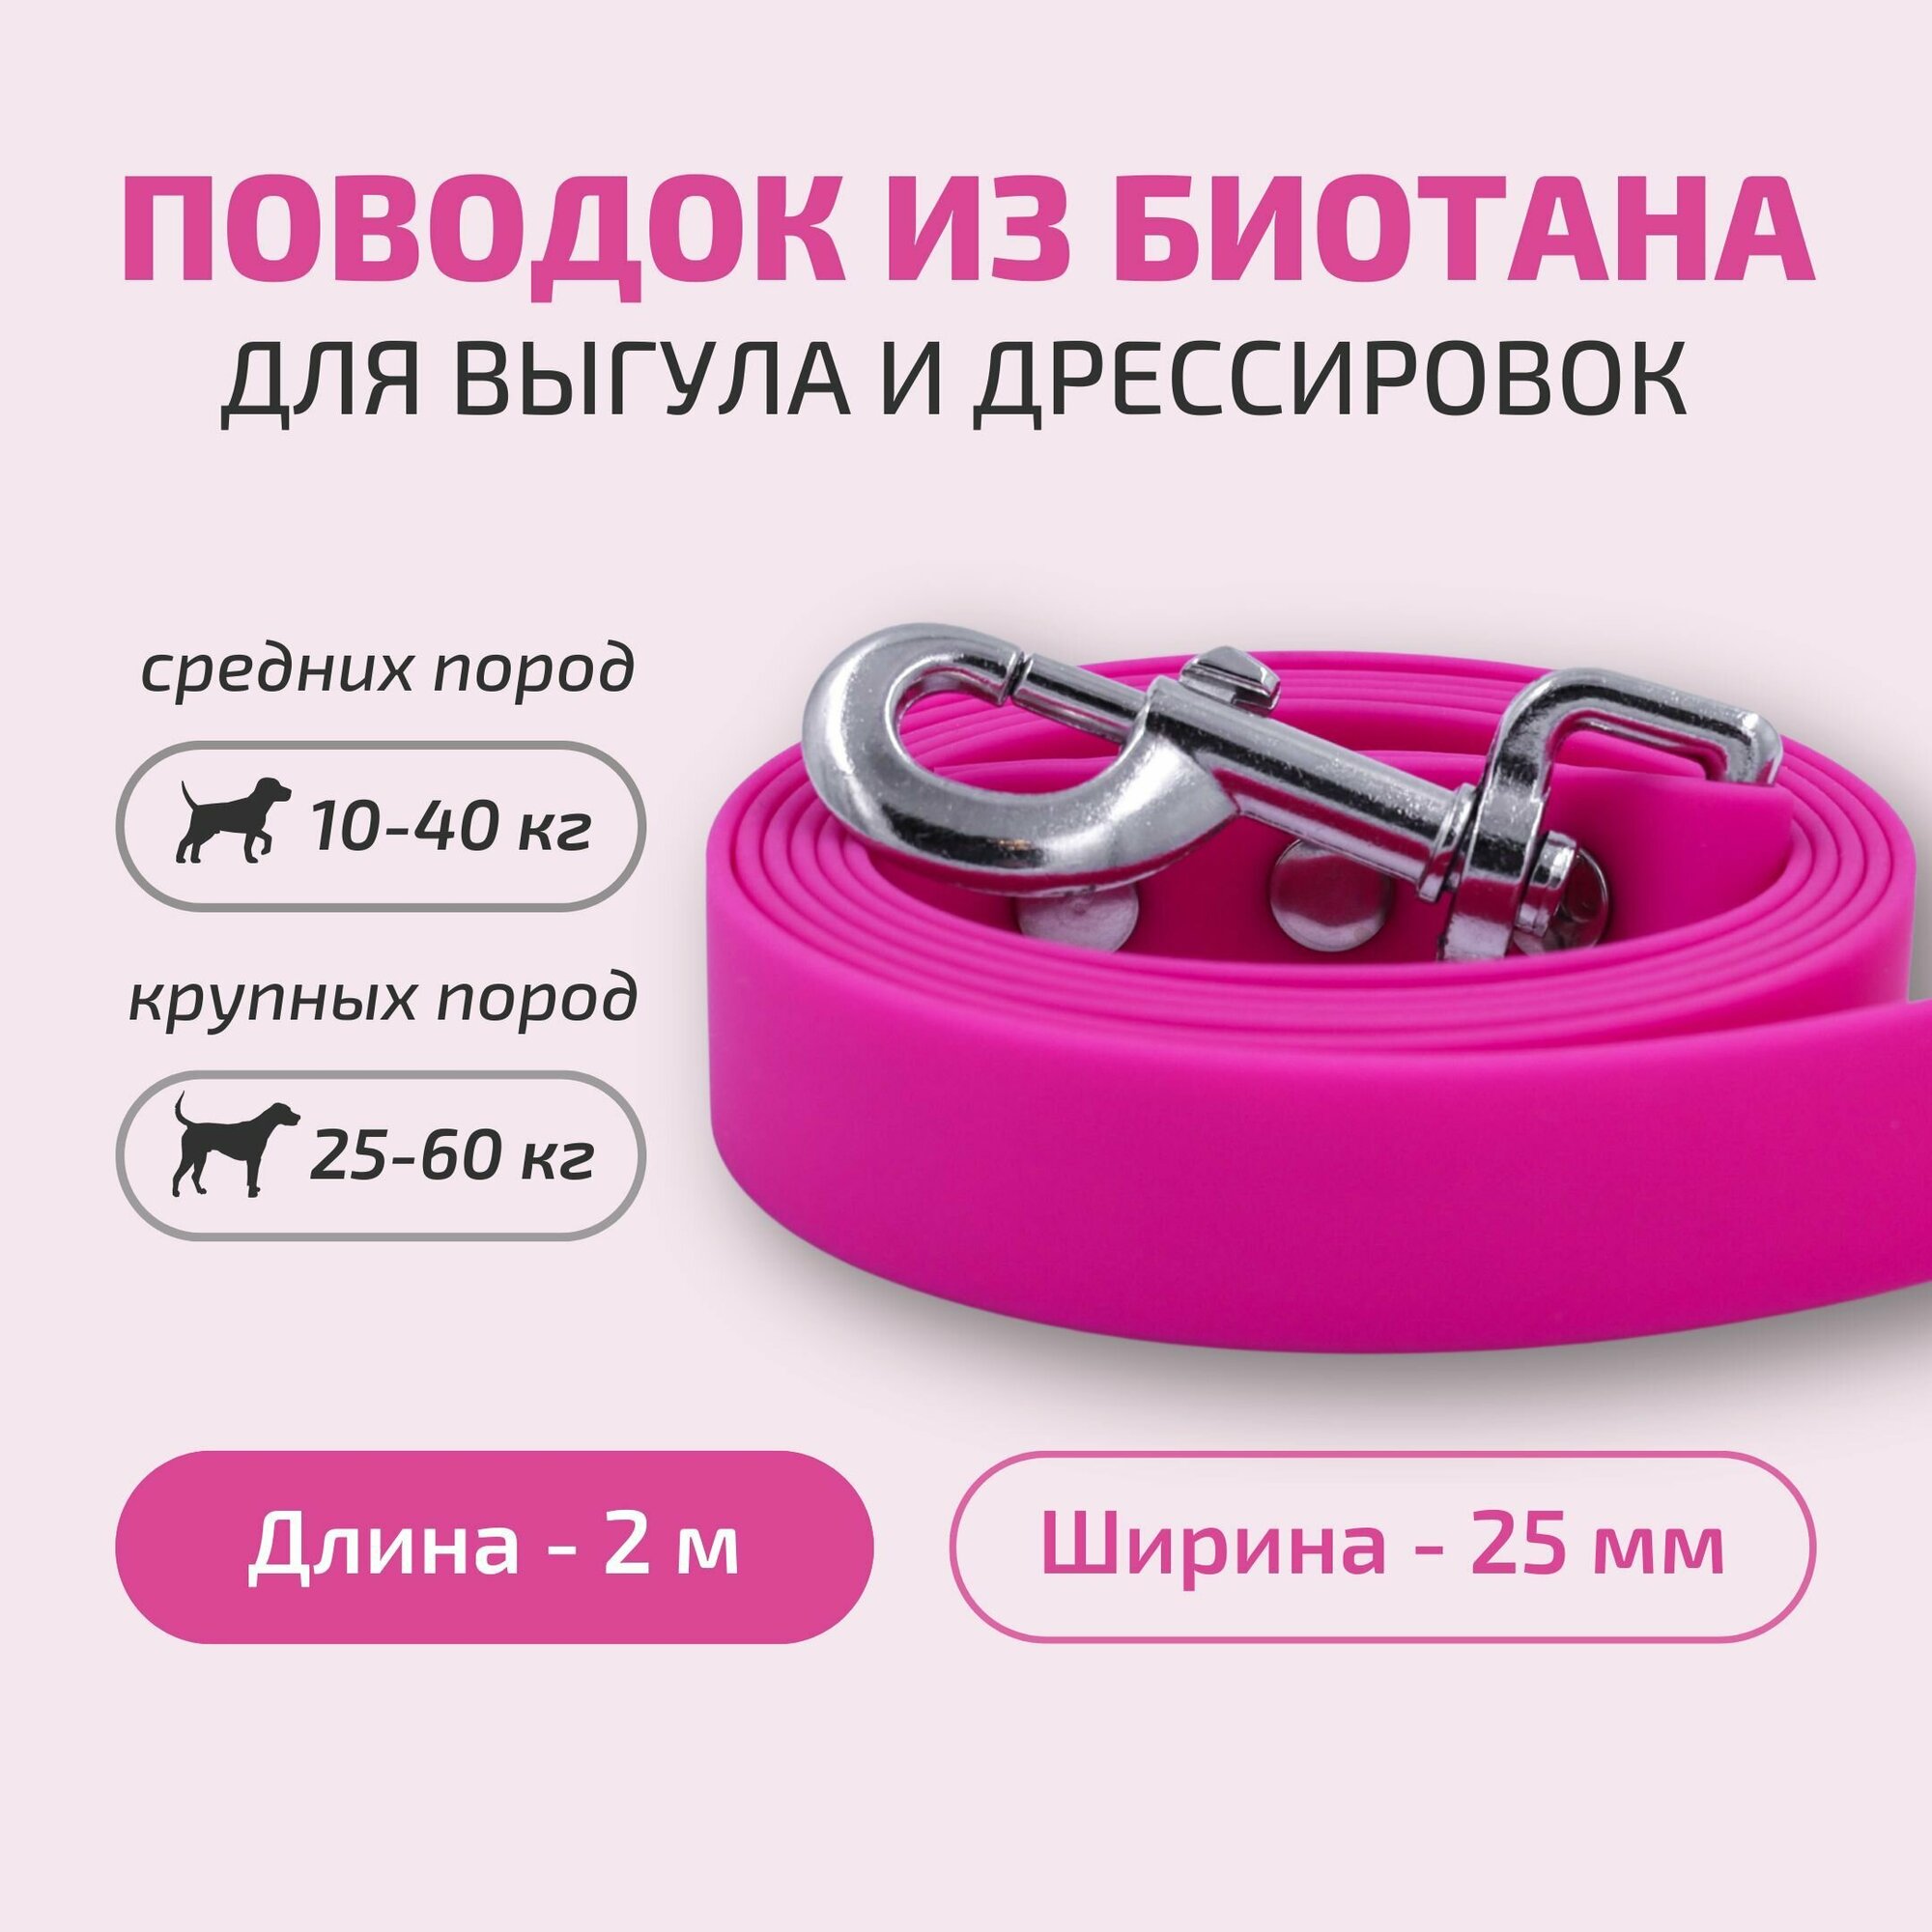 Поводок для собак Povodki Shop из биотана розовый, барби, ширина 25 мм, длина 2 м